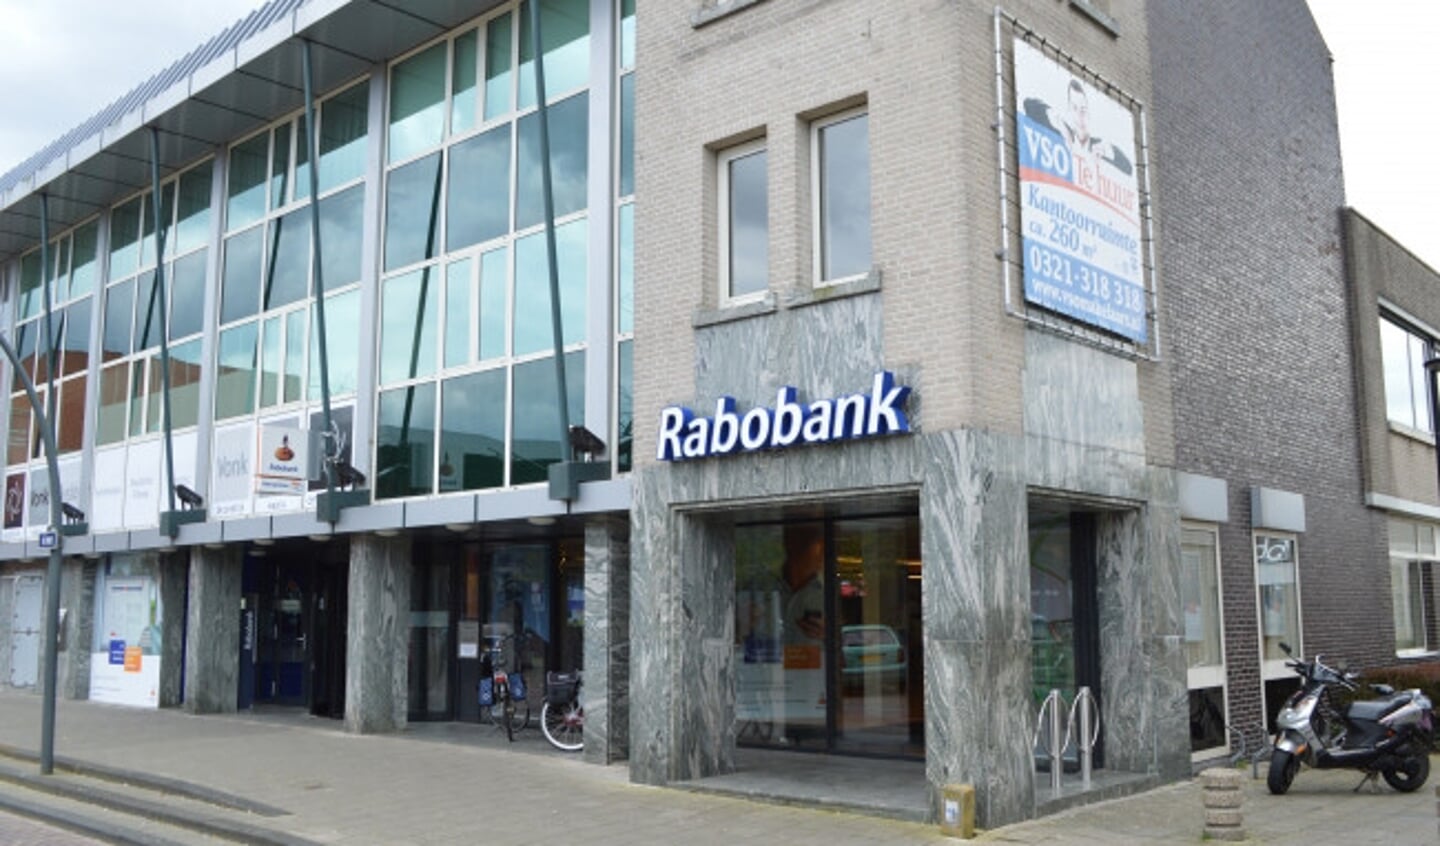 Het gebouw, in het verleden gebruikt door de Rabobank.